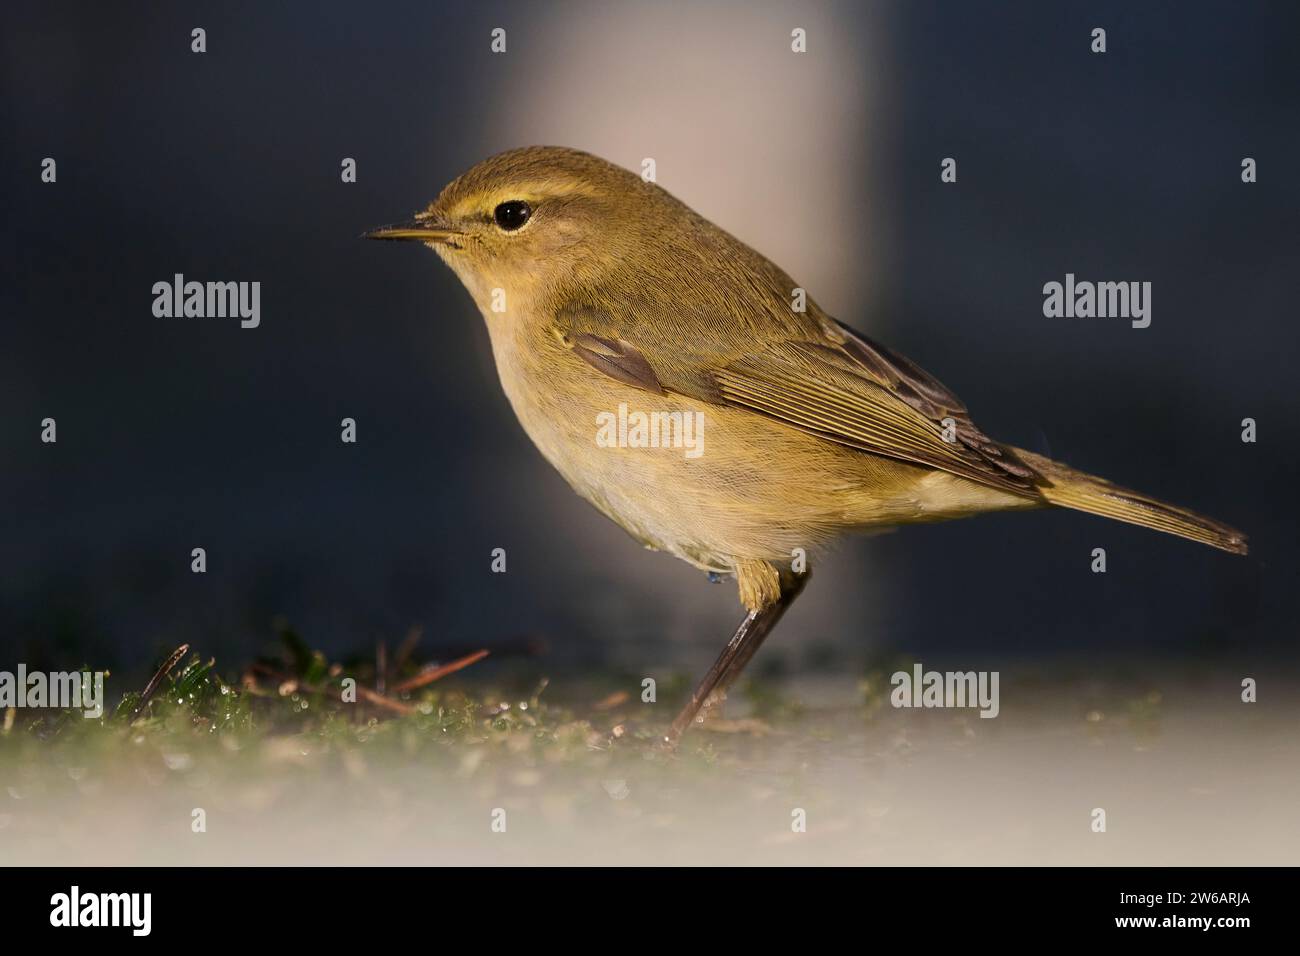 Al crepuscolo viene catturato un comune uccello chiffchaff, arroccato sul terreno con uno sfondo morbido che ne migliora le caratteristiche delicate Foto Stock